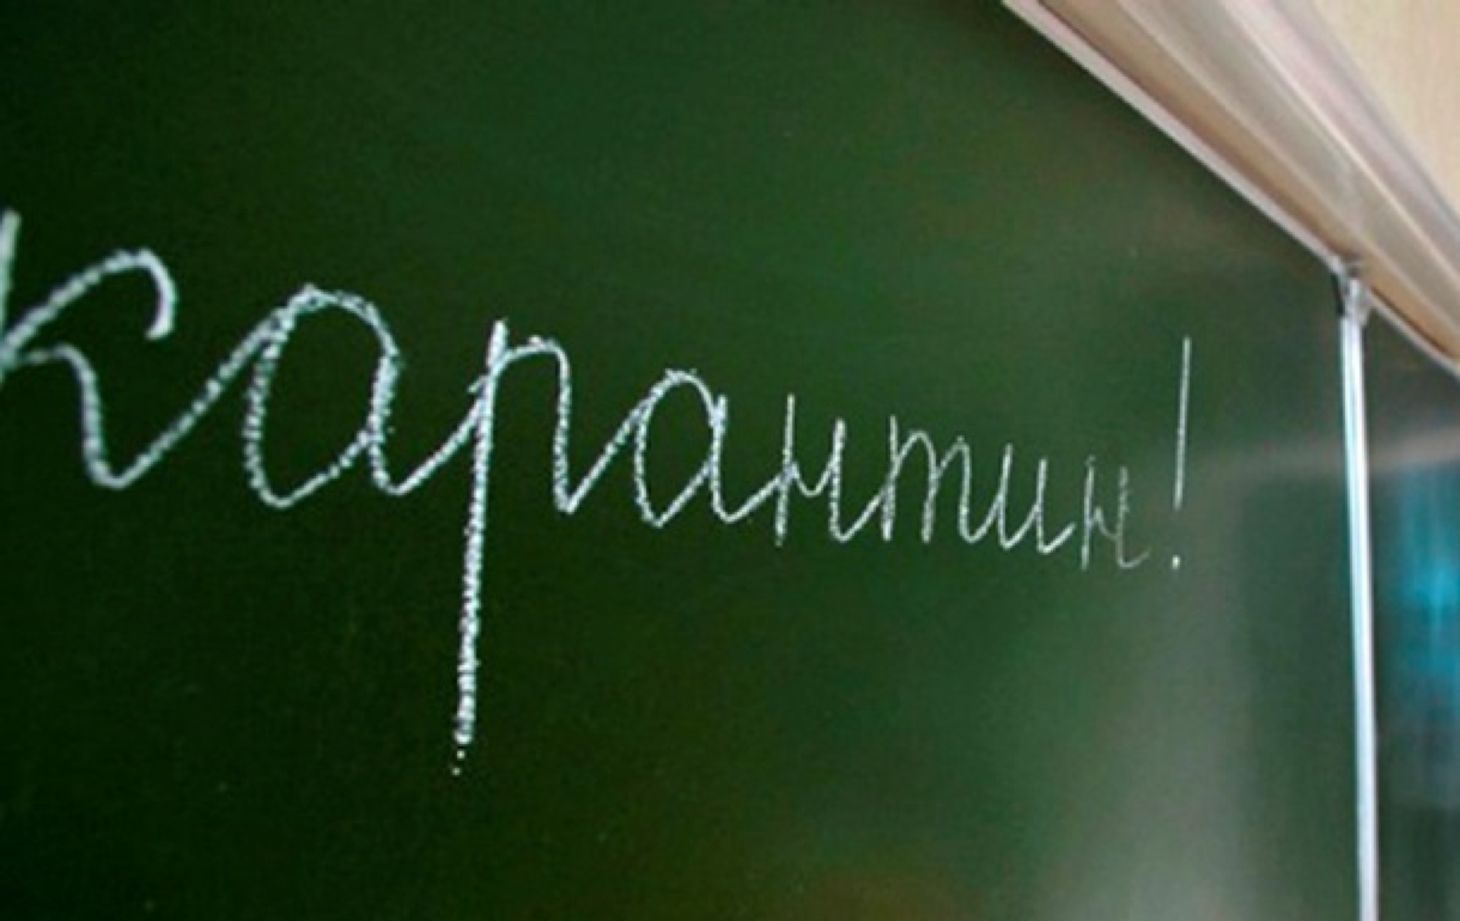 Рішення продовжити карантин у всіх шкільних загальноосвітніх закладах міста до 15 лютого прийняли сьогодні на засіданні протиепідемічної комісії при Ужгородській міській раді.